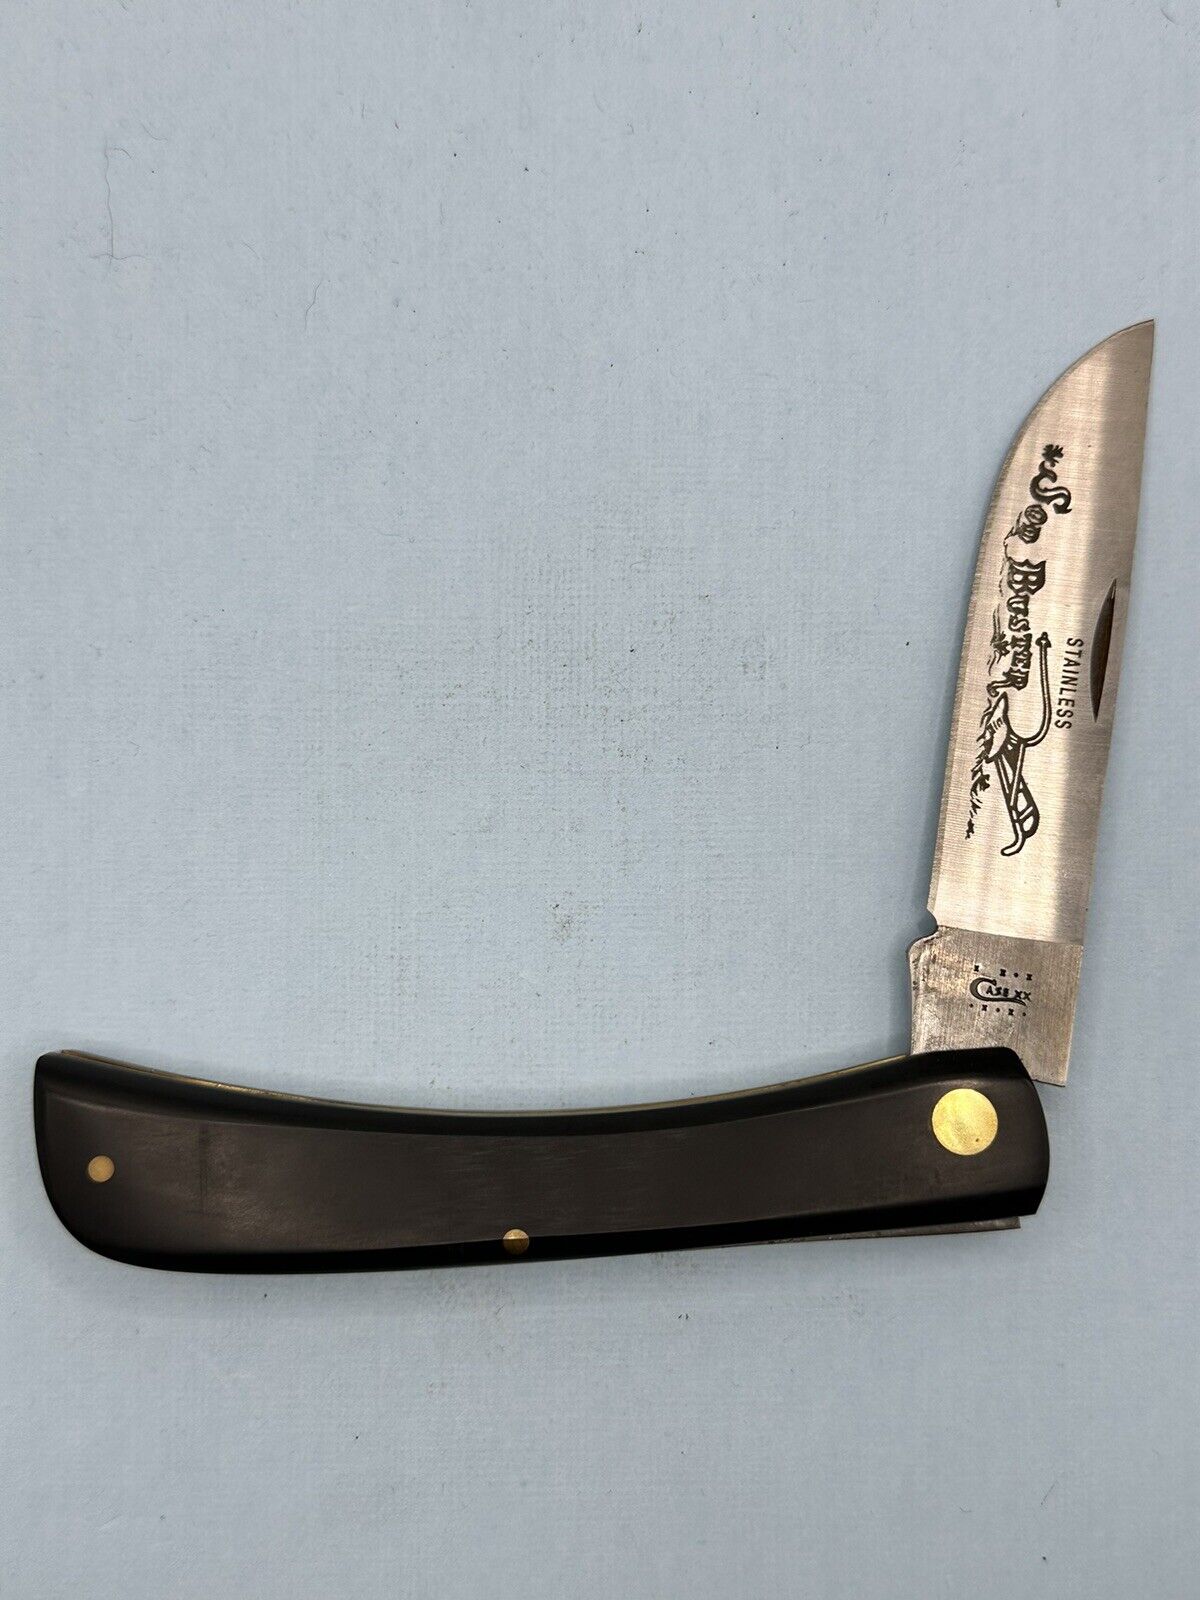 Vintage Case Cutlery Sod Buster Black Derlin Handle Knife Made In USA